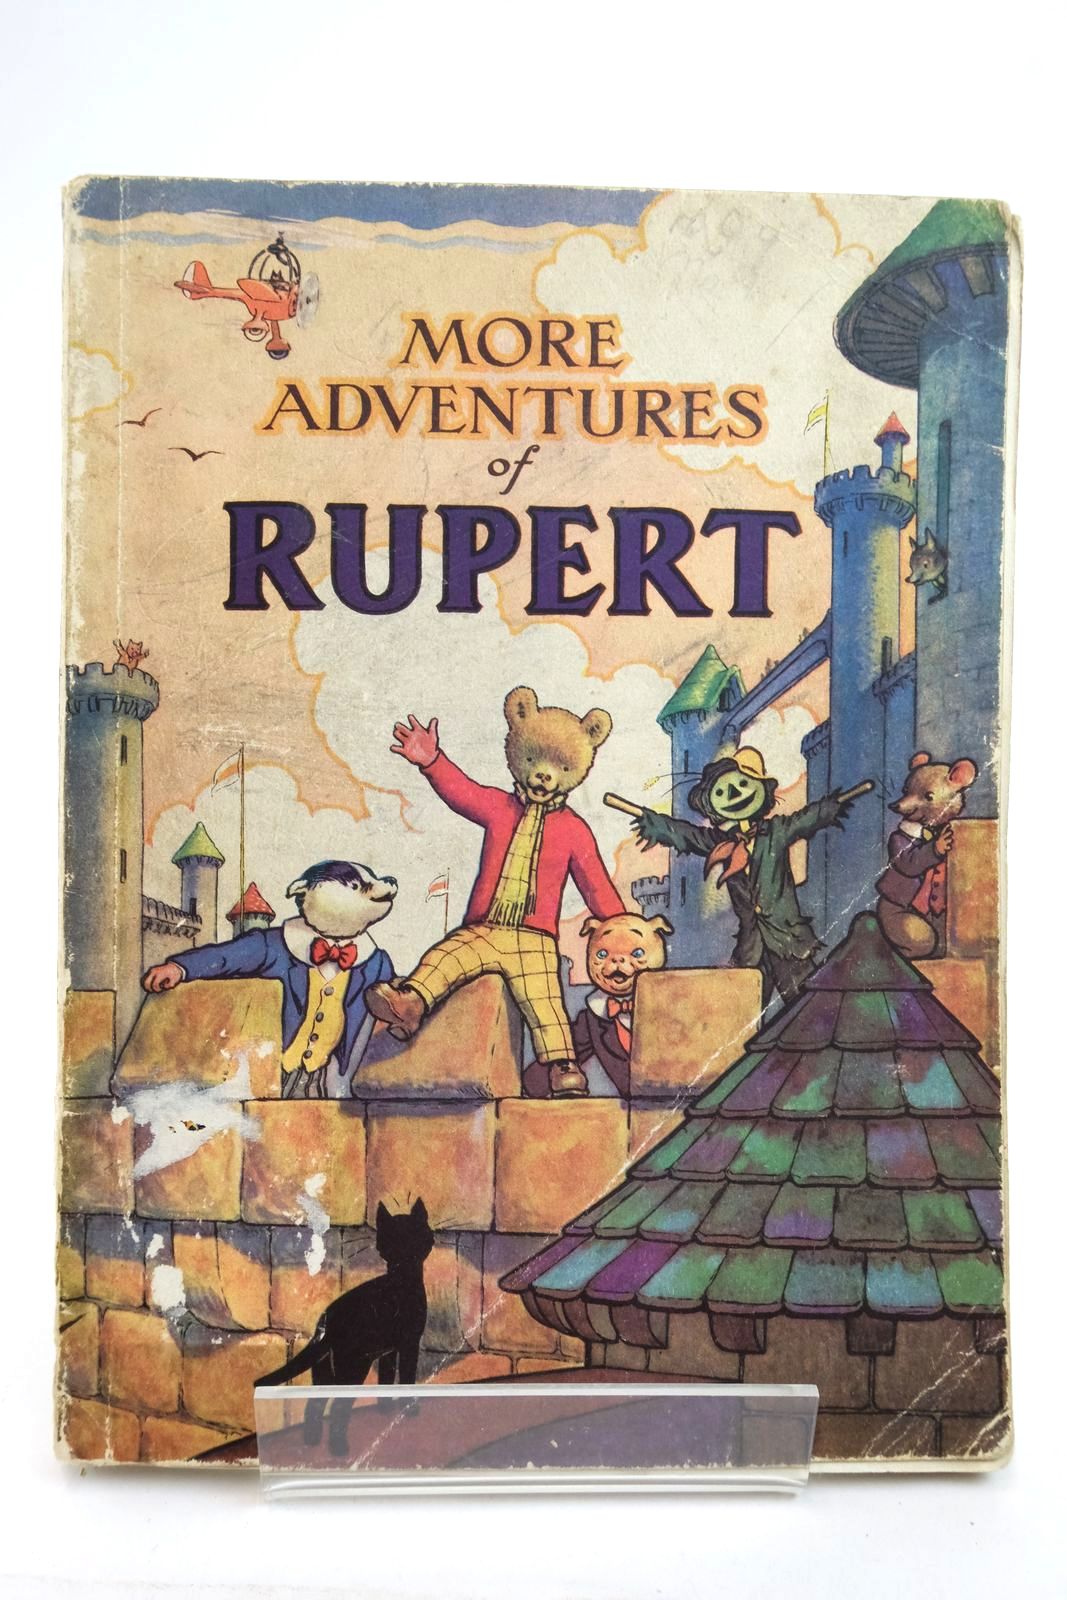 Rupert Annual 1942 - More Adventures of Rupert